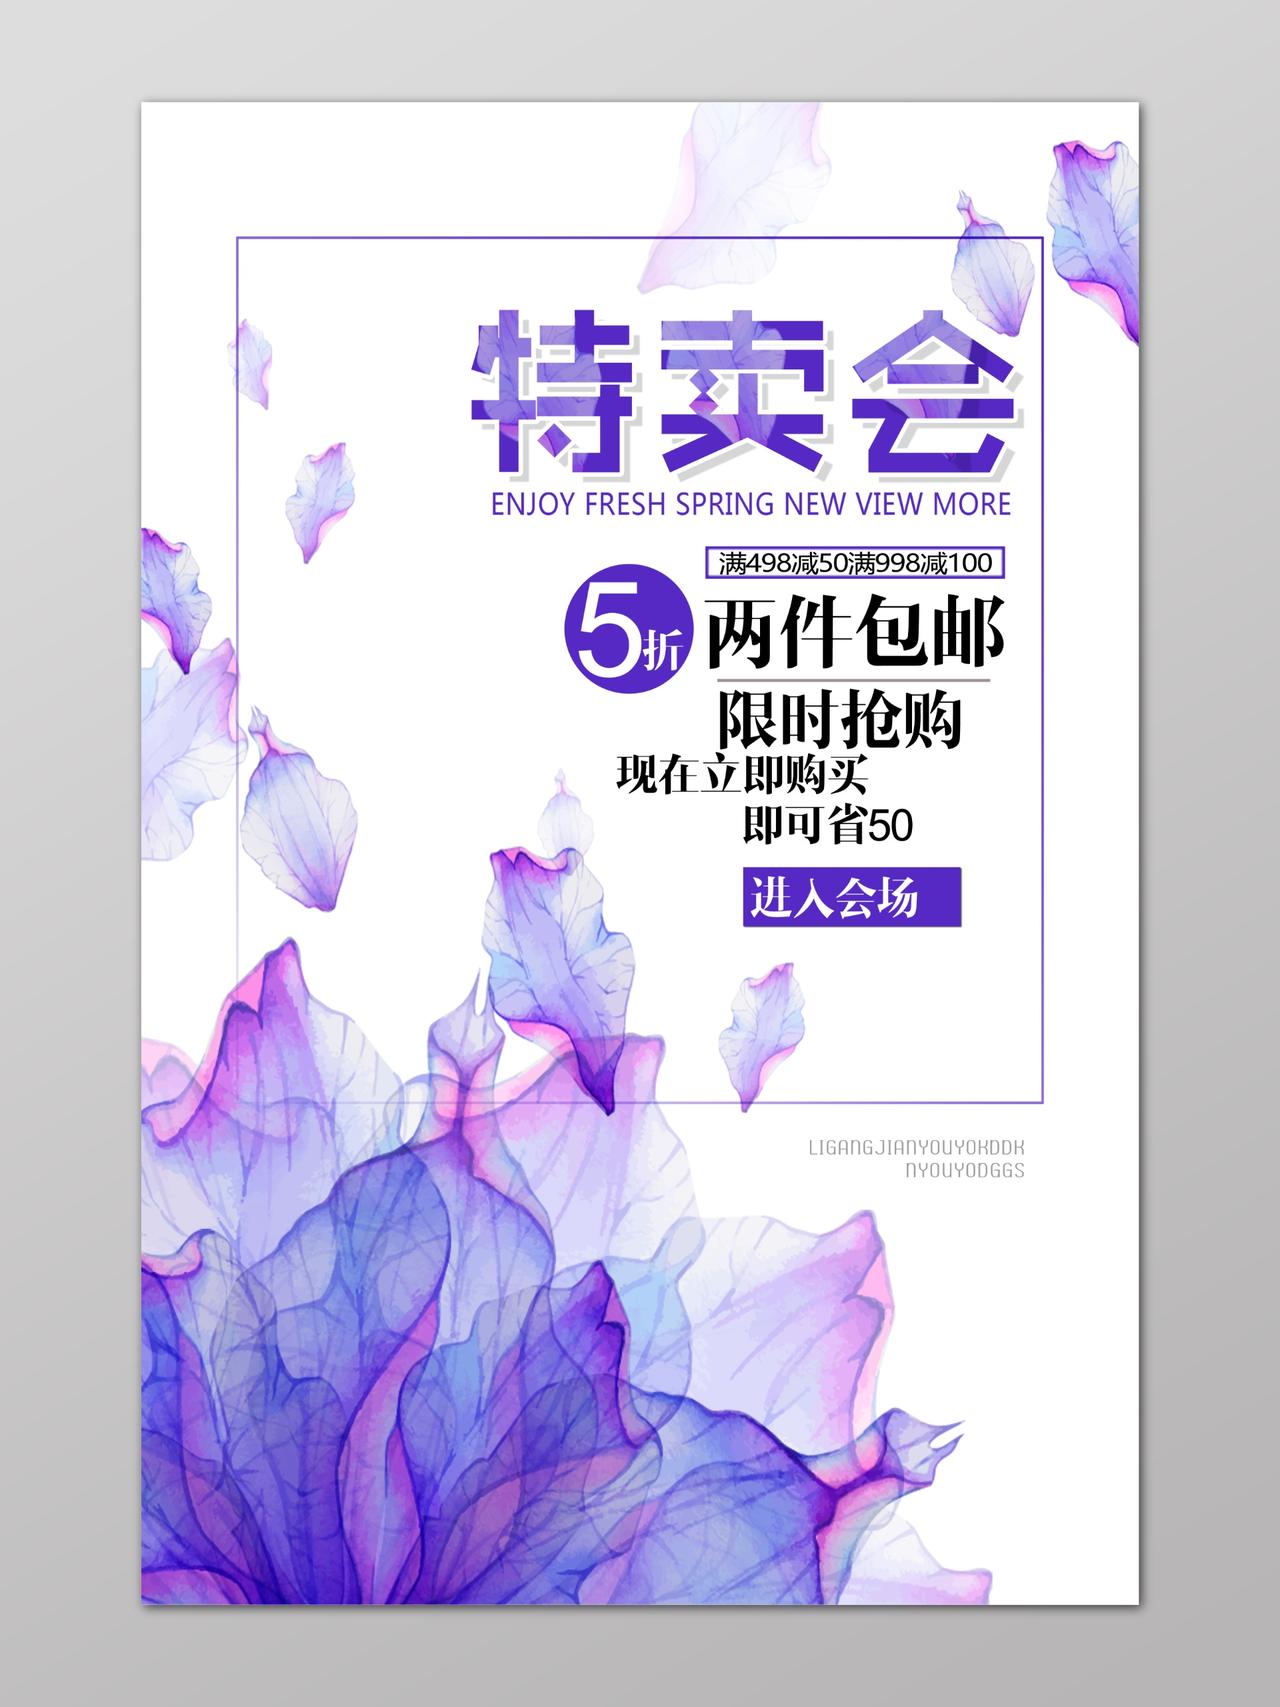 特卖会活动促销限时抢购清新紫色花卉海报模版